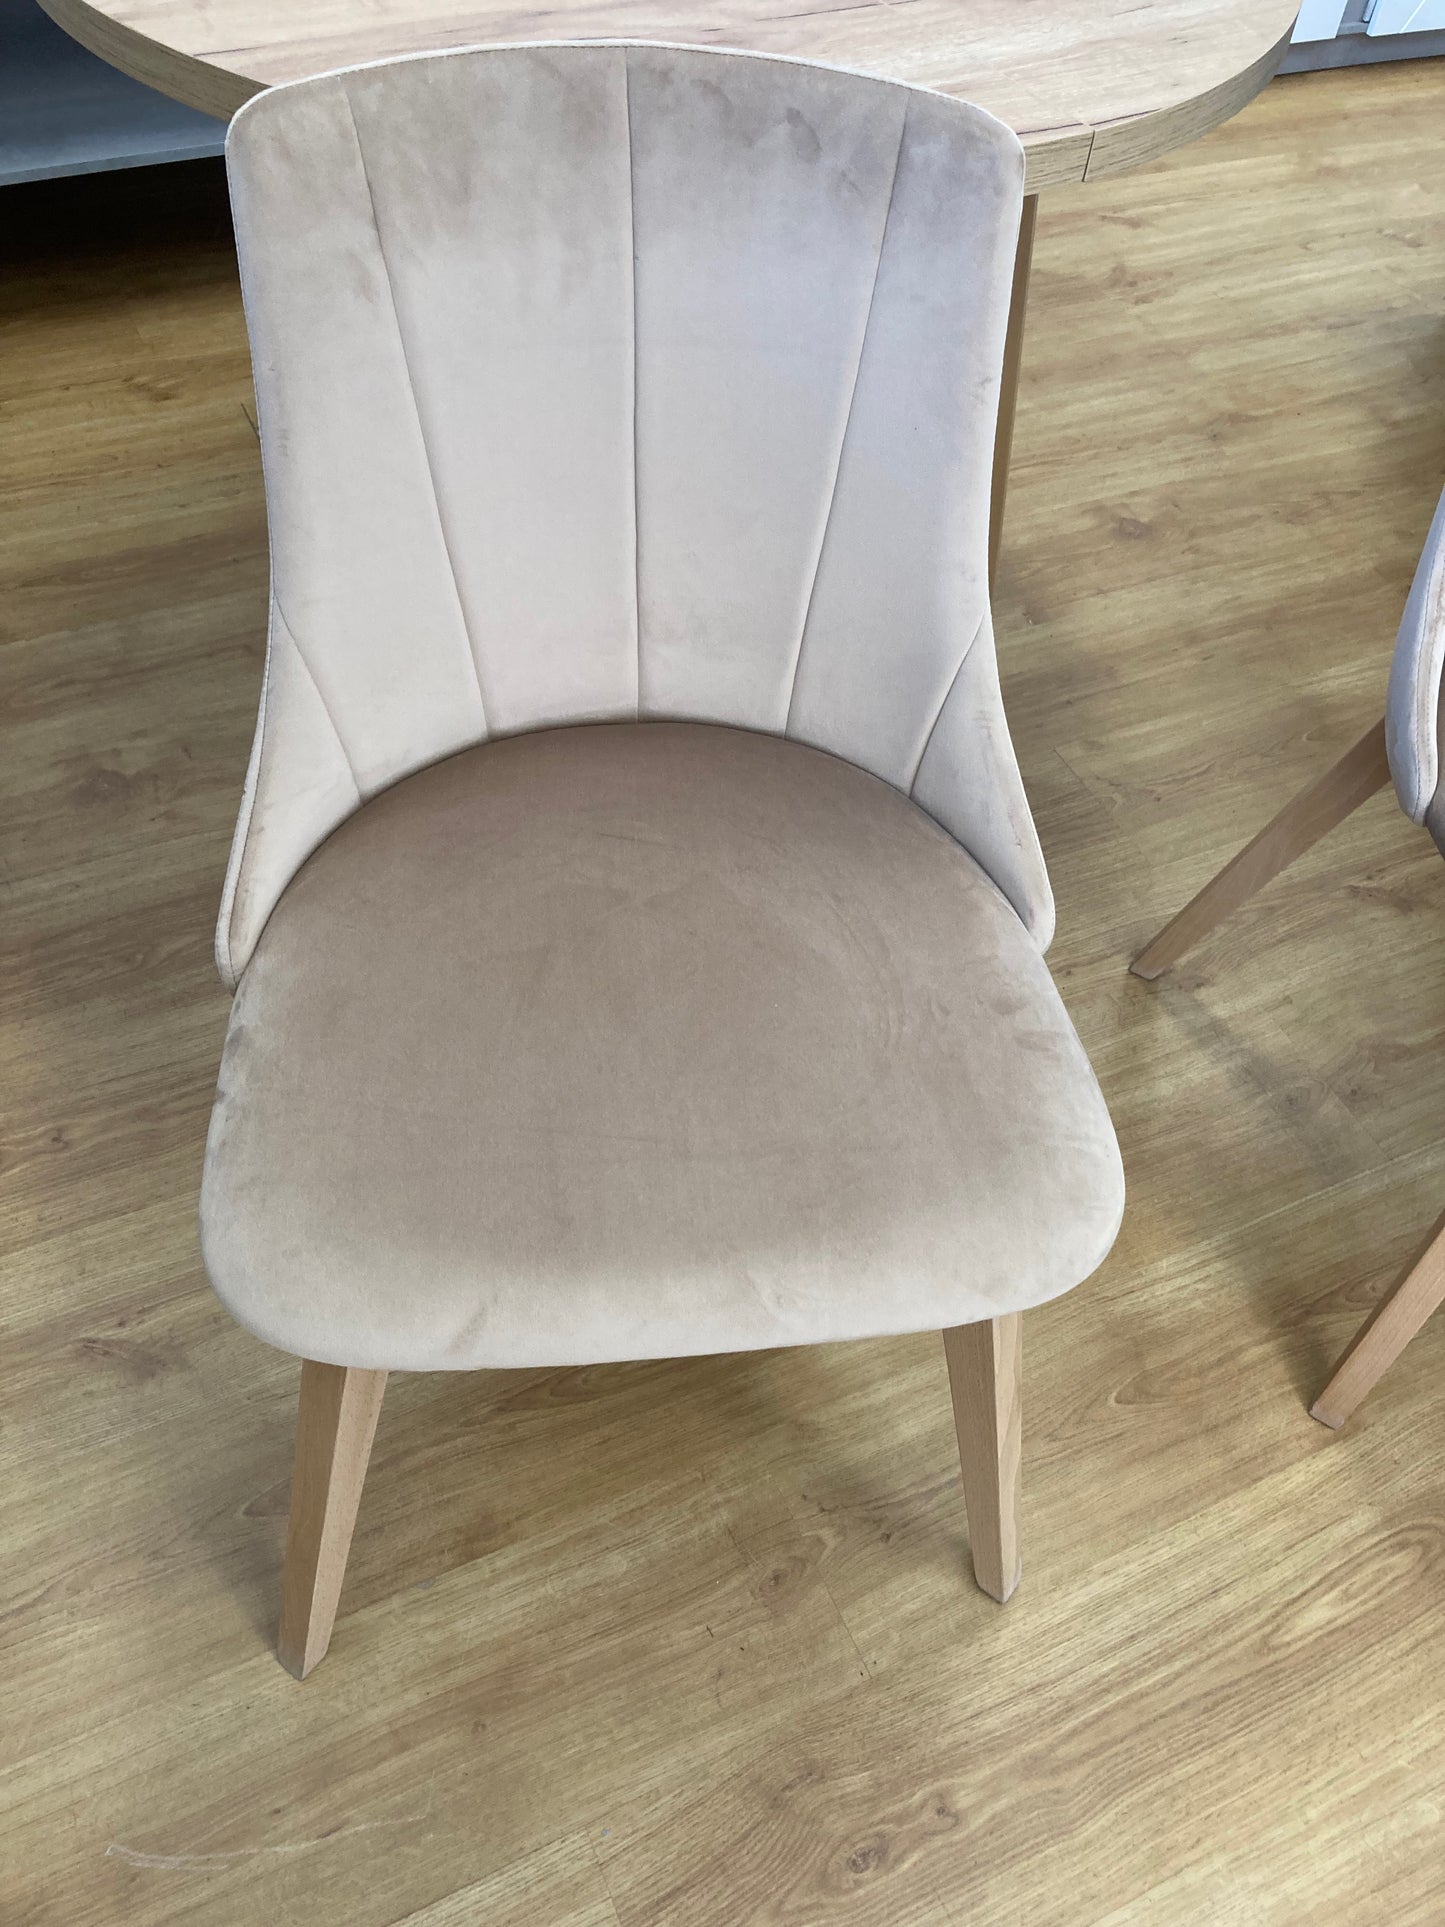 Krzesło KT-61 w jasnej tkaninie z ozdobnymi przeszyciami na oparciu, gładkim obszernym i wygodnym siedziskiem oraz drewnianymi jasnymi nogami.